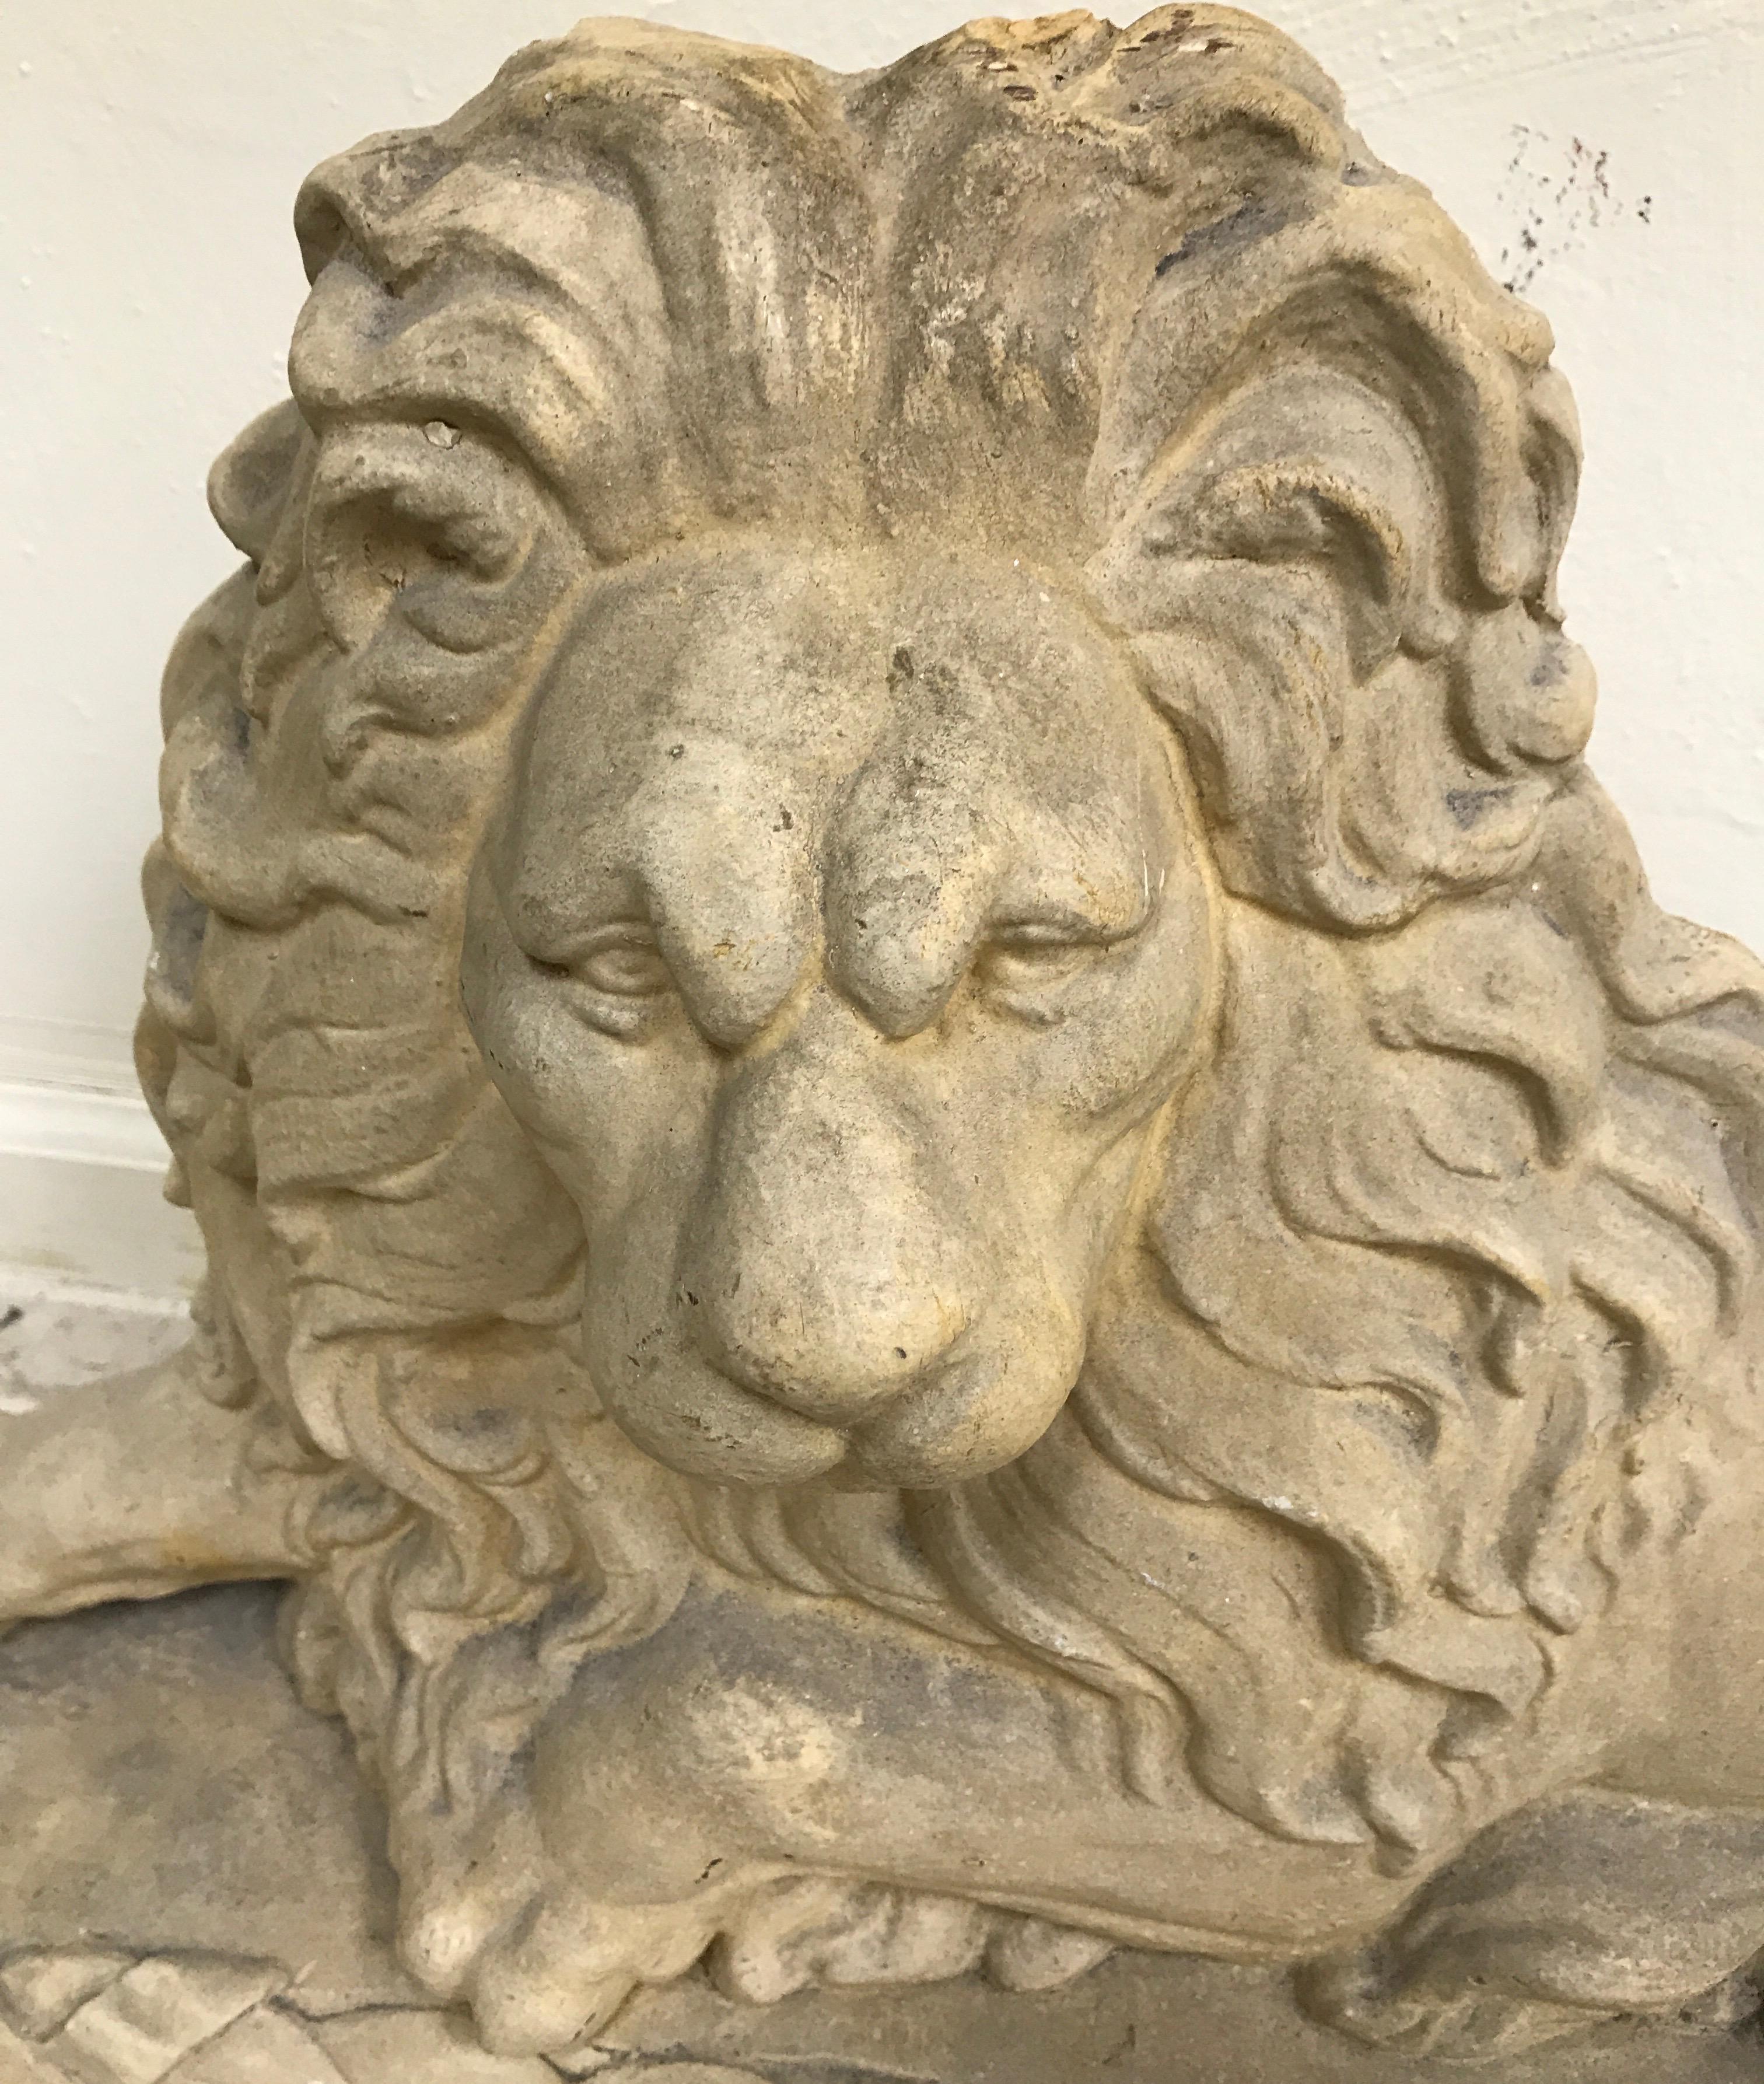 Plaster sculpture of a reclining lion.